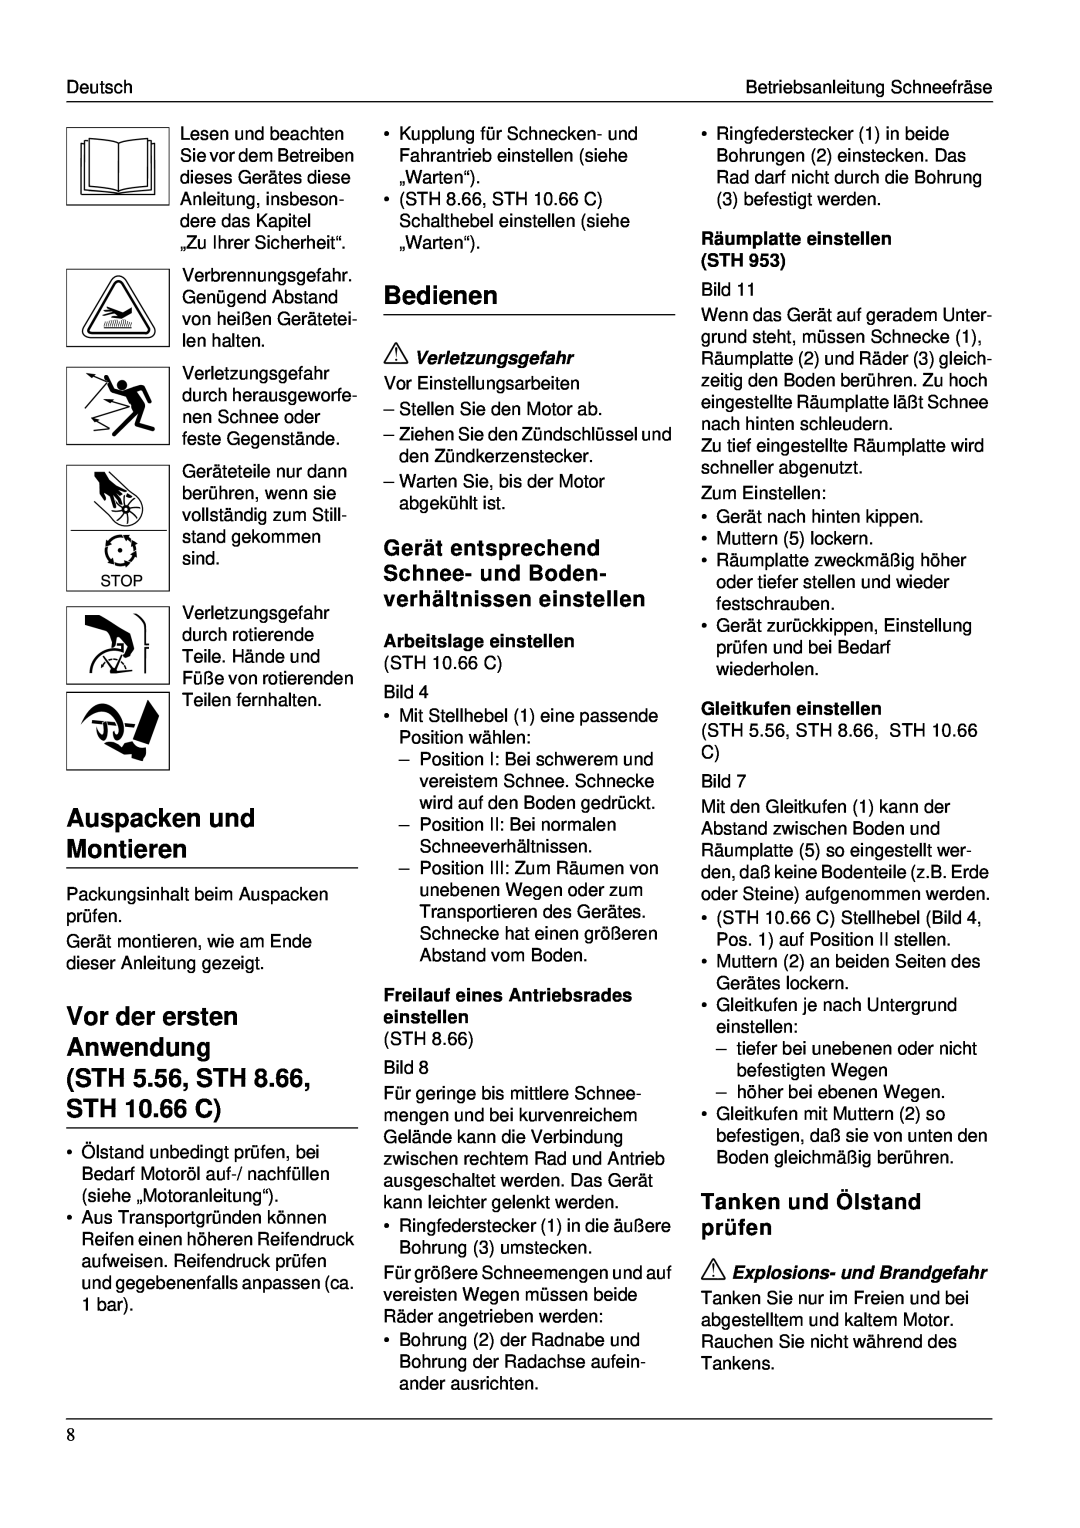 Karcher STH 953 manual Auspacken und Montieren, STH 5.56, STH 8.66, STH 10.66 C, Bedienen, Vor der ersten Anwendung 